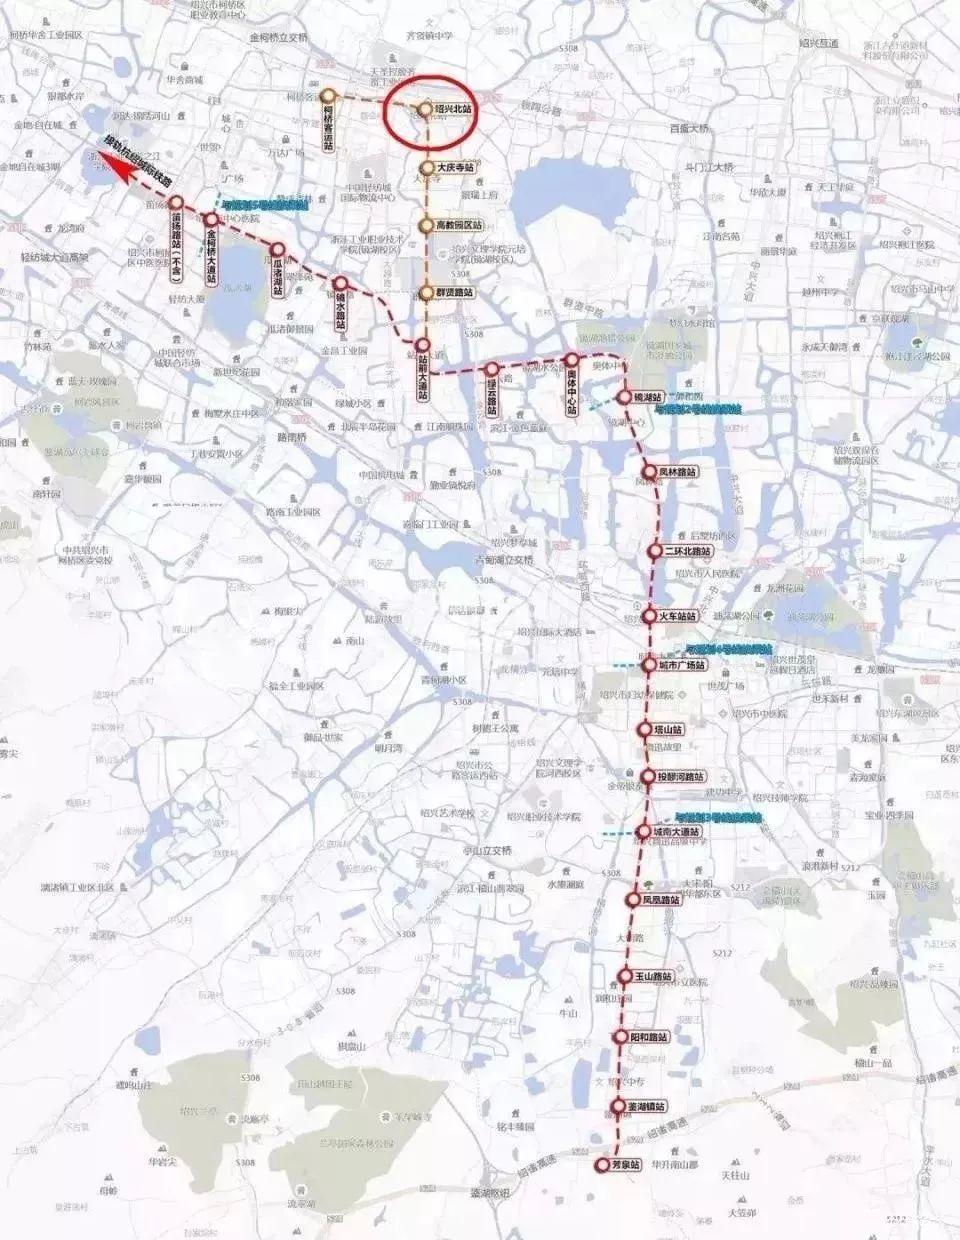 绍兴地铁线的线路,也很容易理解:杭州地铁线,从钱江新城,到西湖